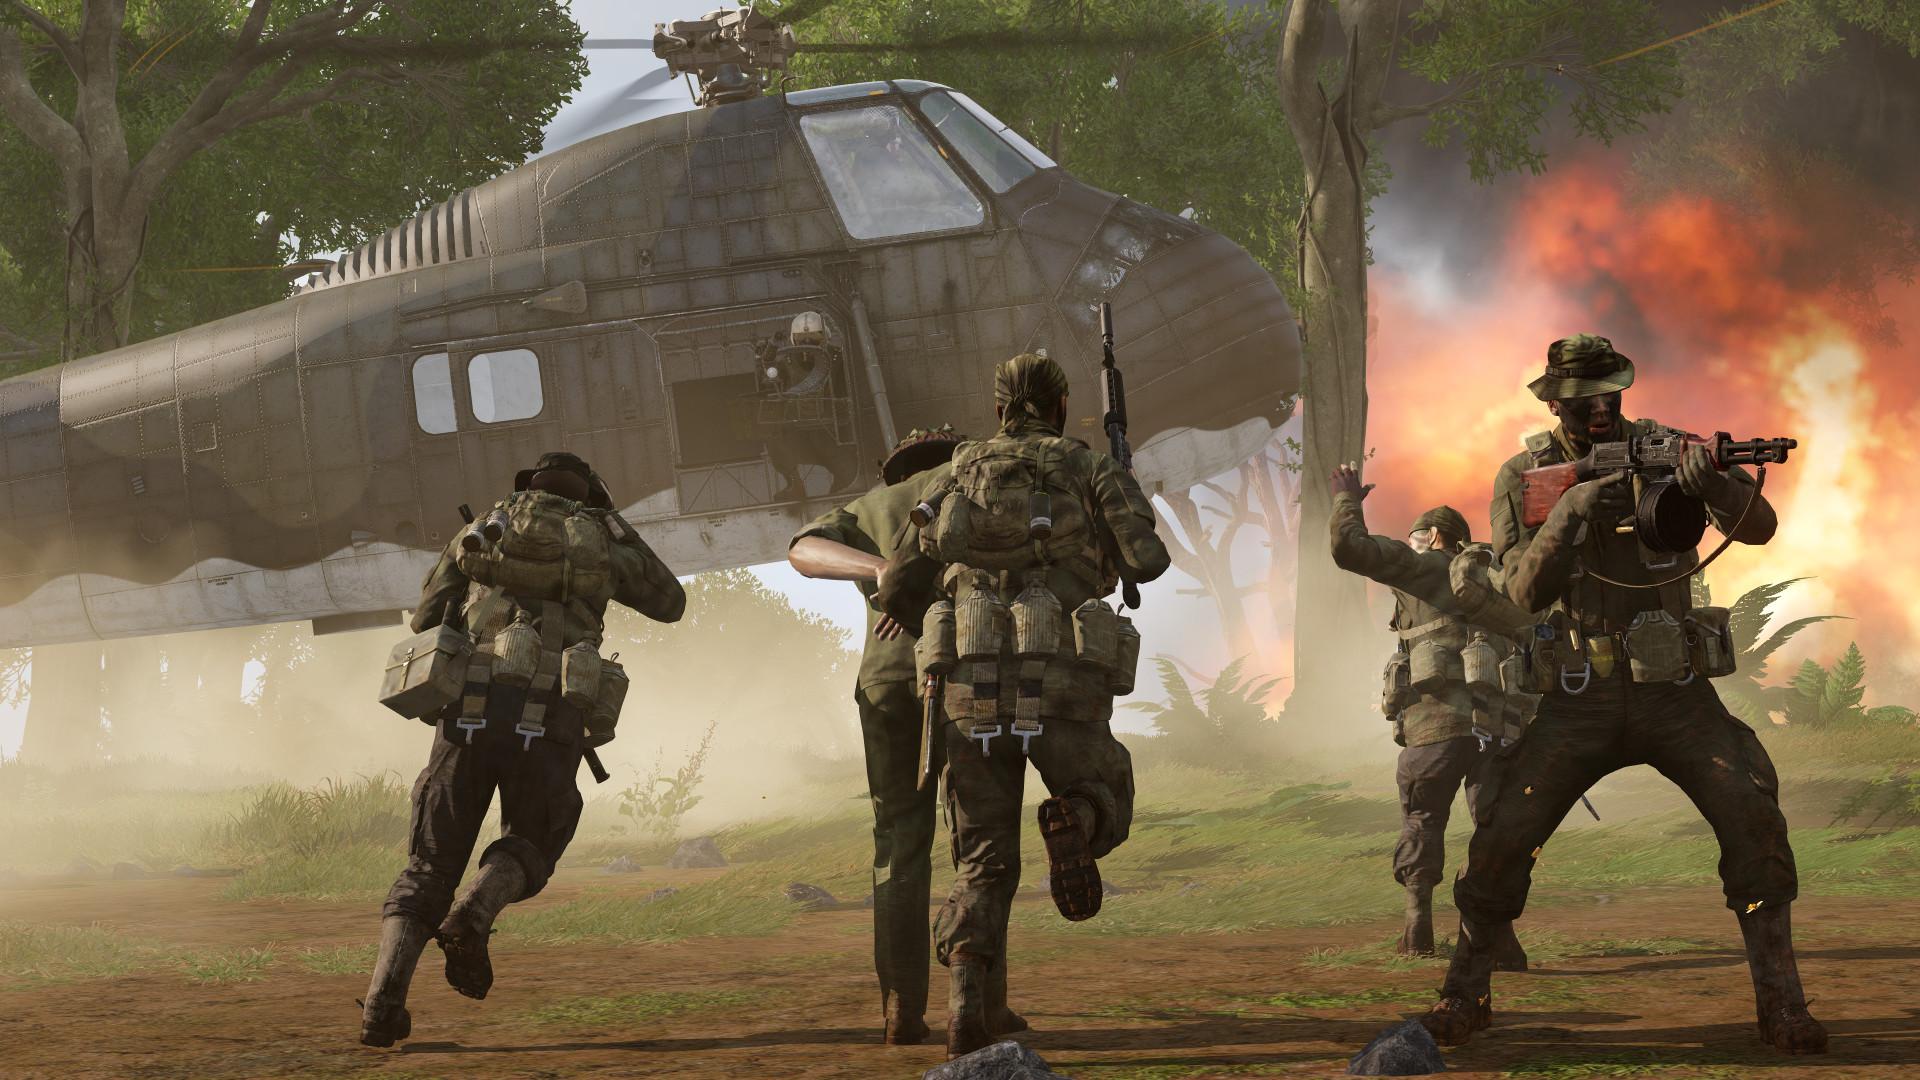 ARMA 3 CREATOR DLC: S.O.G. PRAIRIE FIRE IS COMING SOON, News, Arma 3